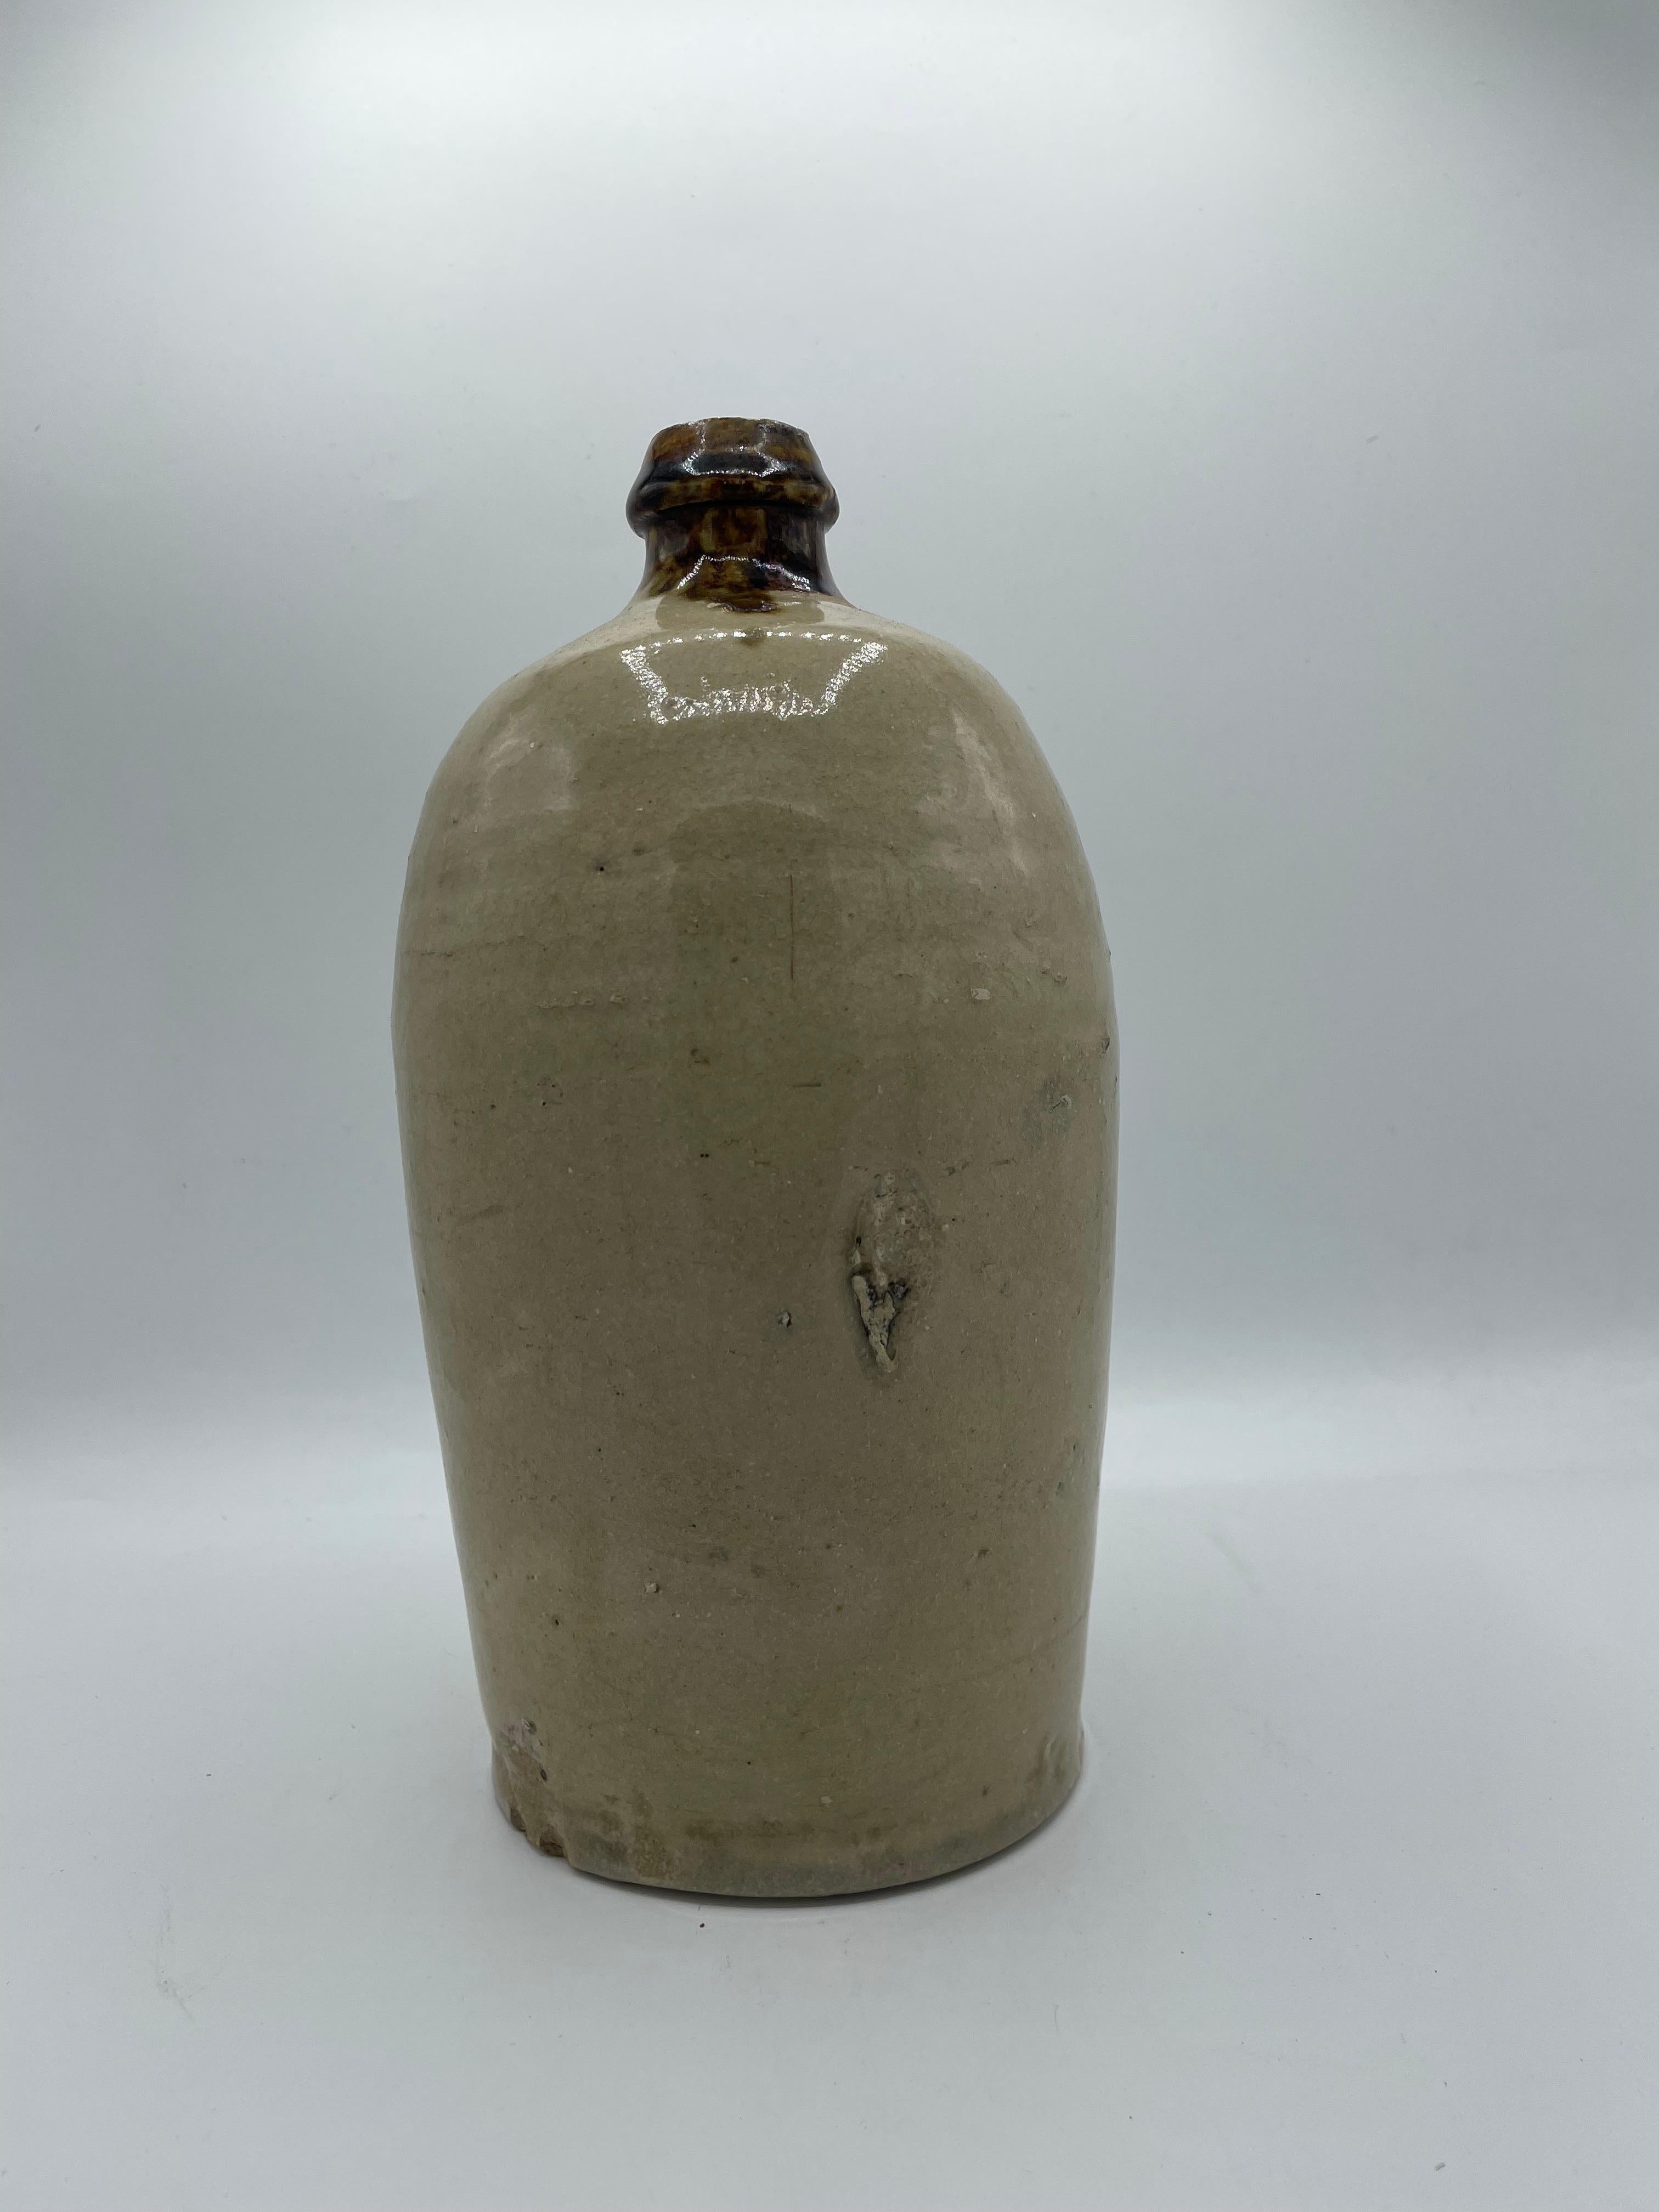 Dies ist eine Flasche, die die Menschen verwendet wurden, um Sake oder Sojasauce zu tragen.
Sie ist aus Porzellan und wurde um 1960 in der Showa-Ära hergestellt. 
Es kann als Blumenvase oder als Dekoration verwendet werden.

Abmessungen:
H25 x 14 x